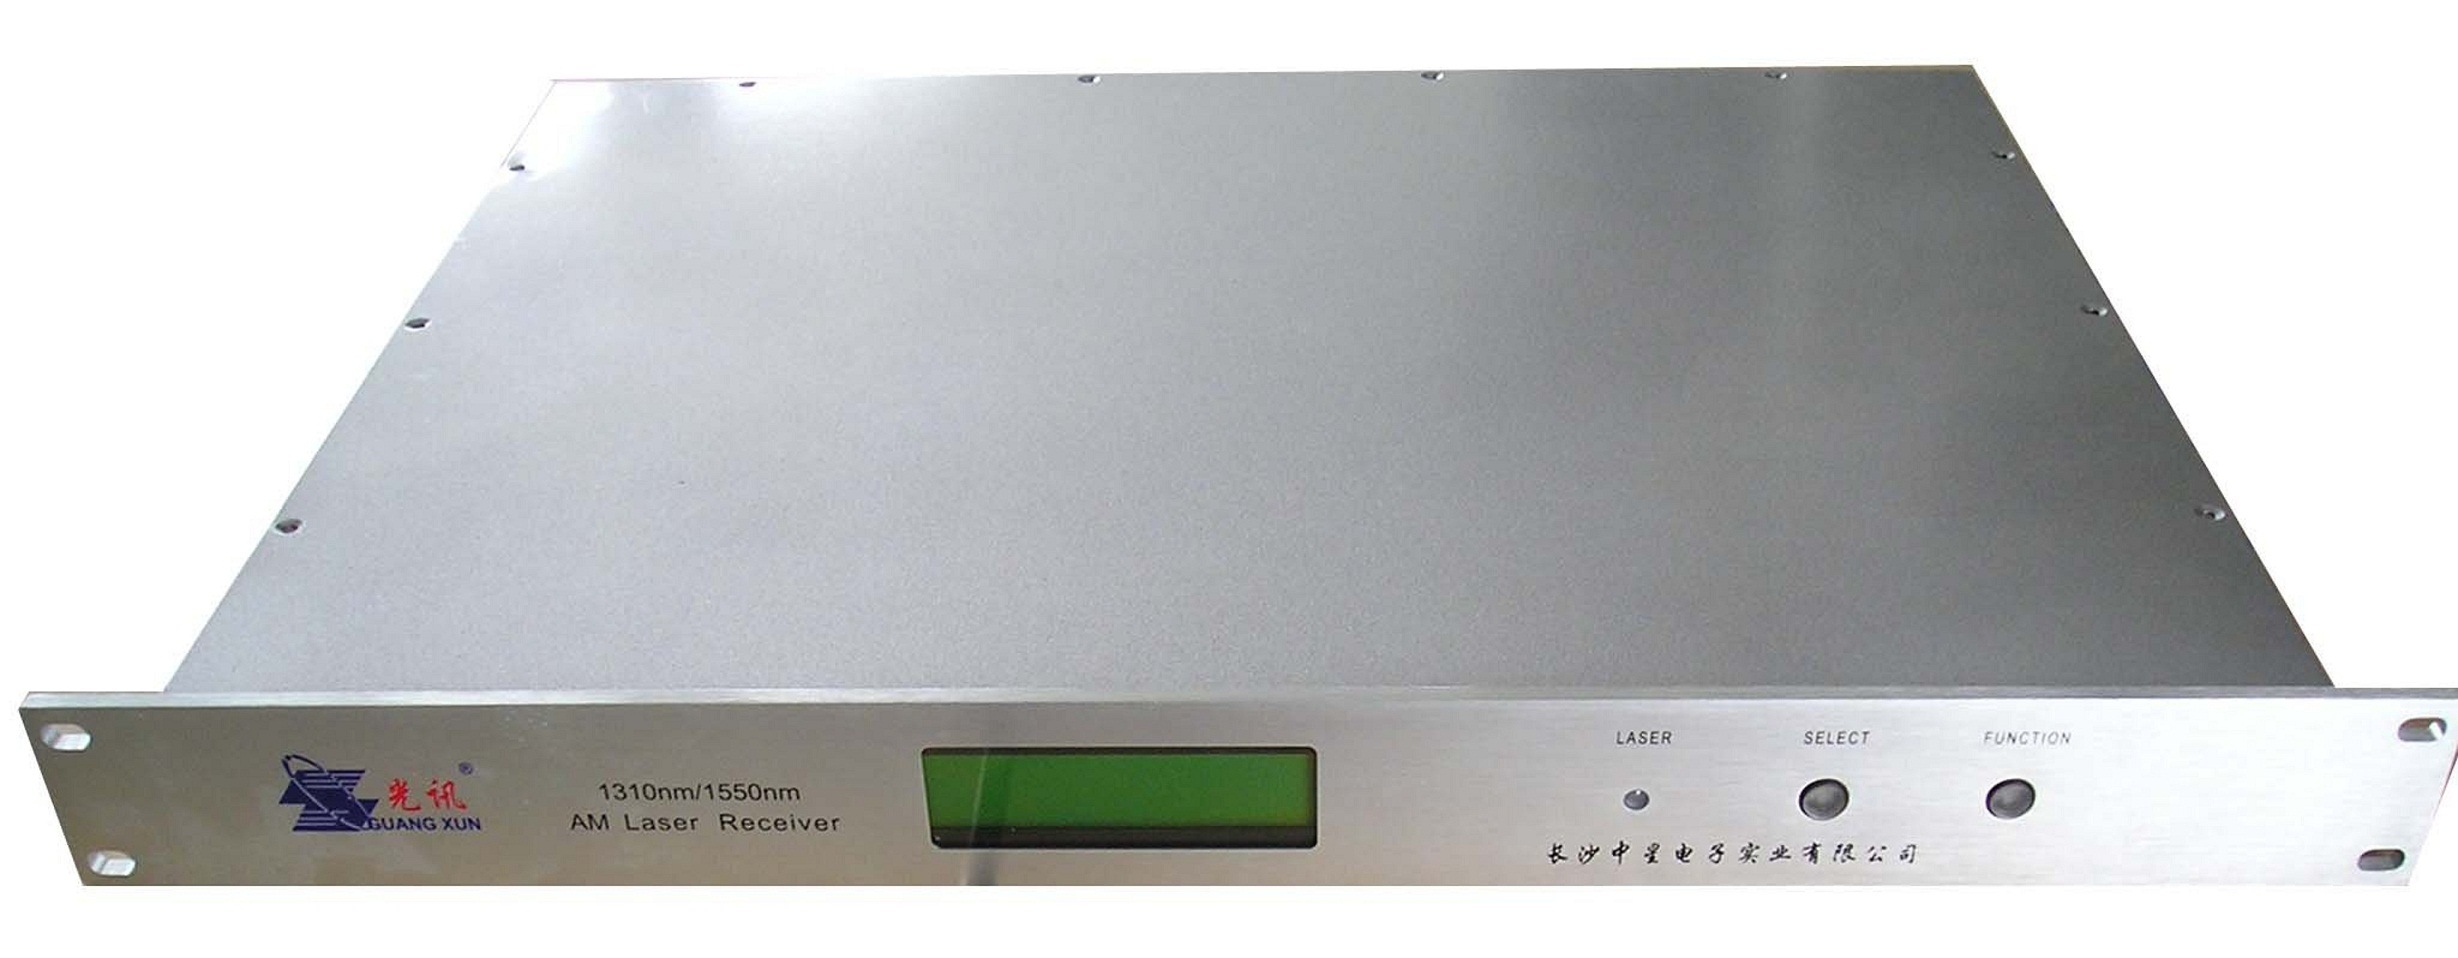 CATV Amplifier for Engine Room (HKTFD-001)